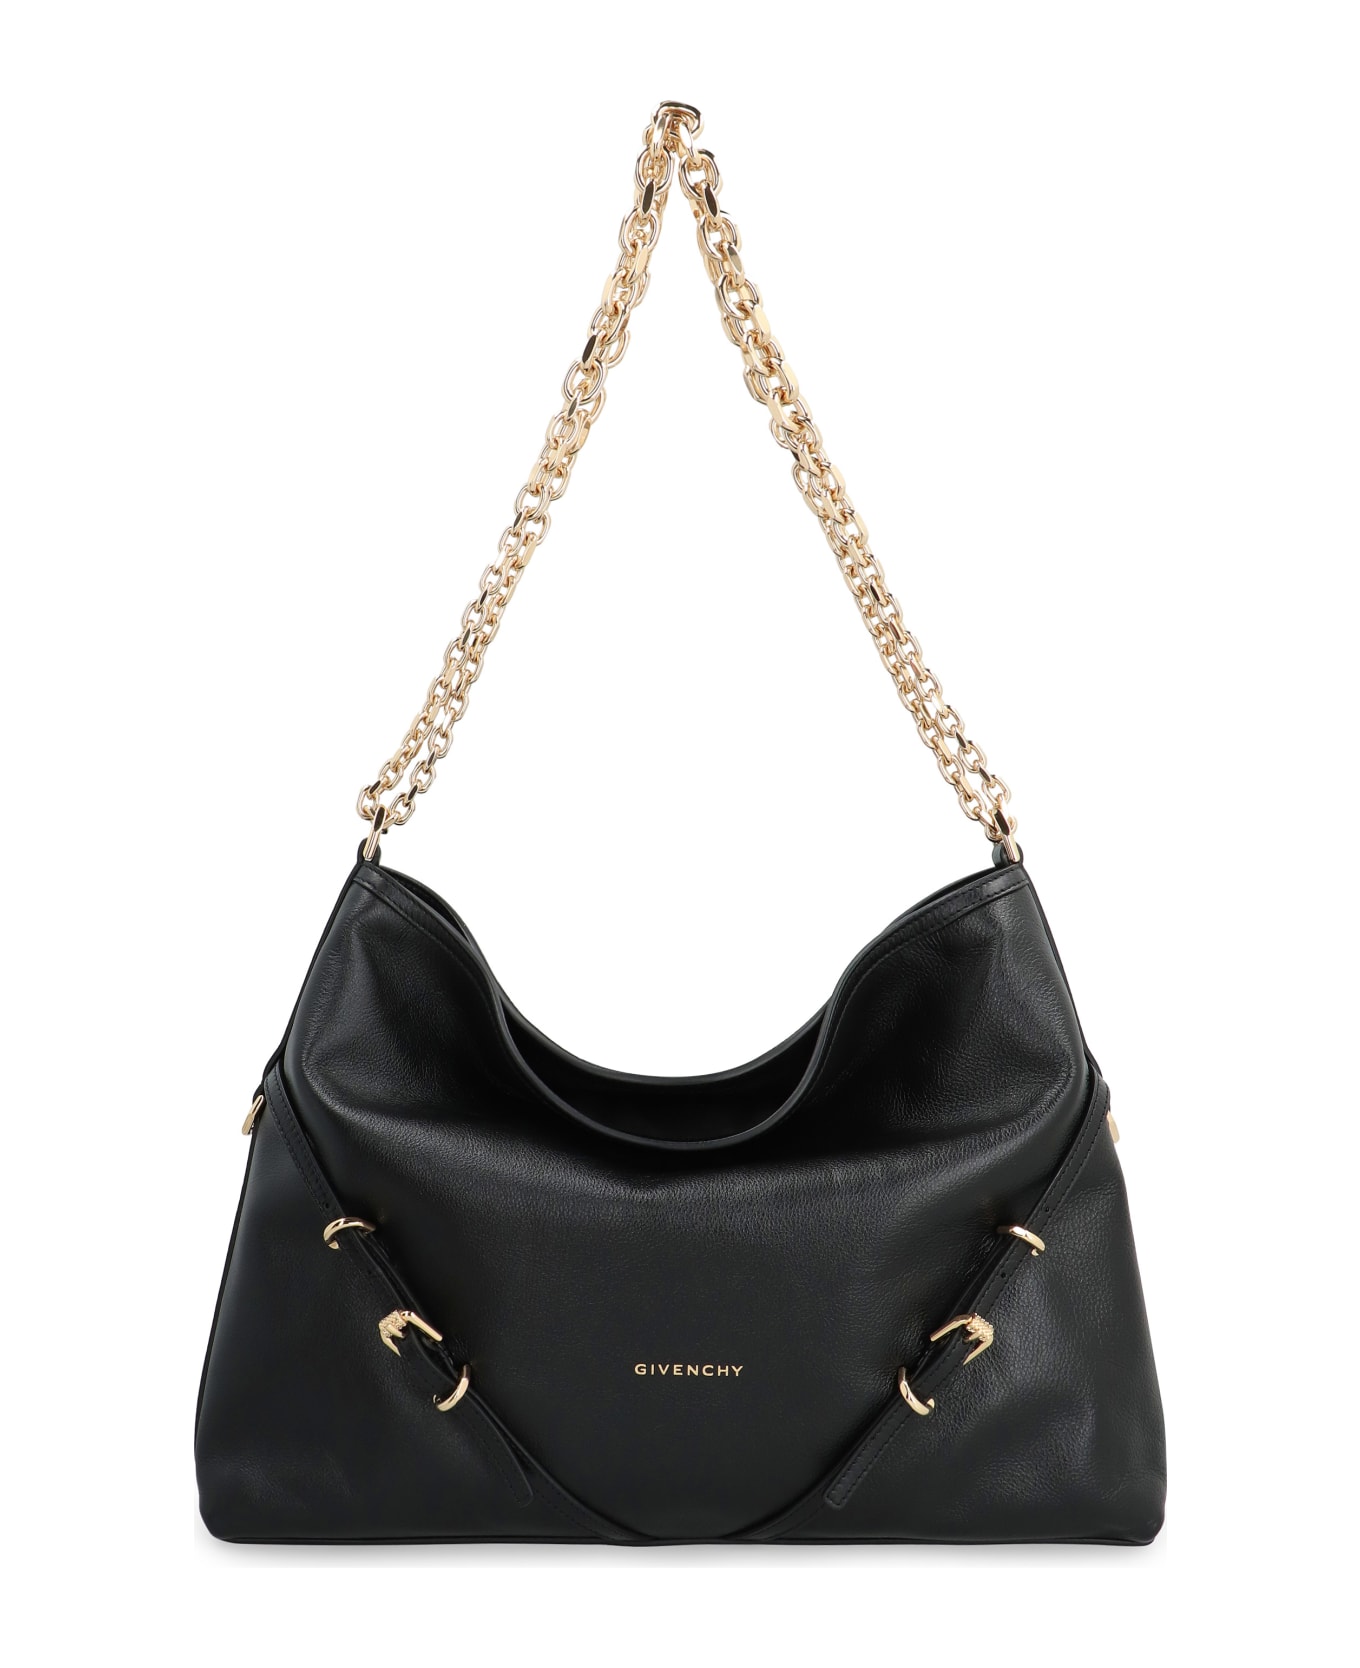 Givenchy Voyou Chain Leather Shoulder Bag - black トートバッグ